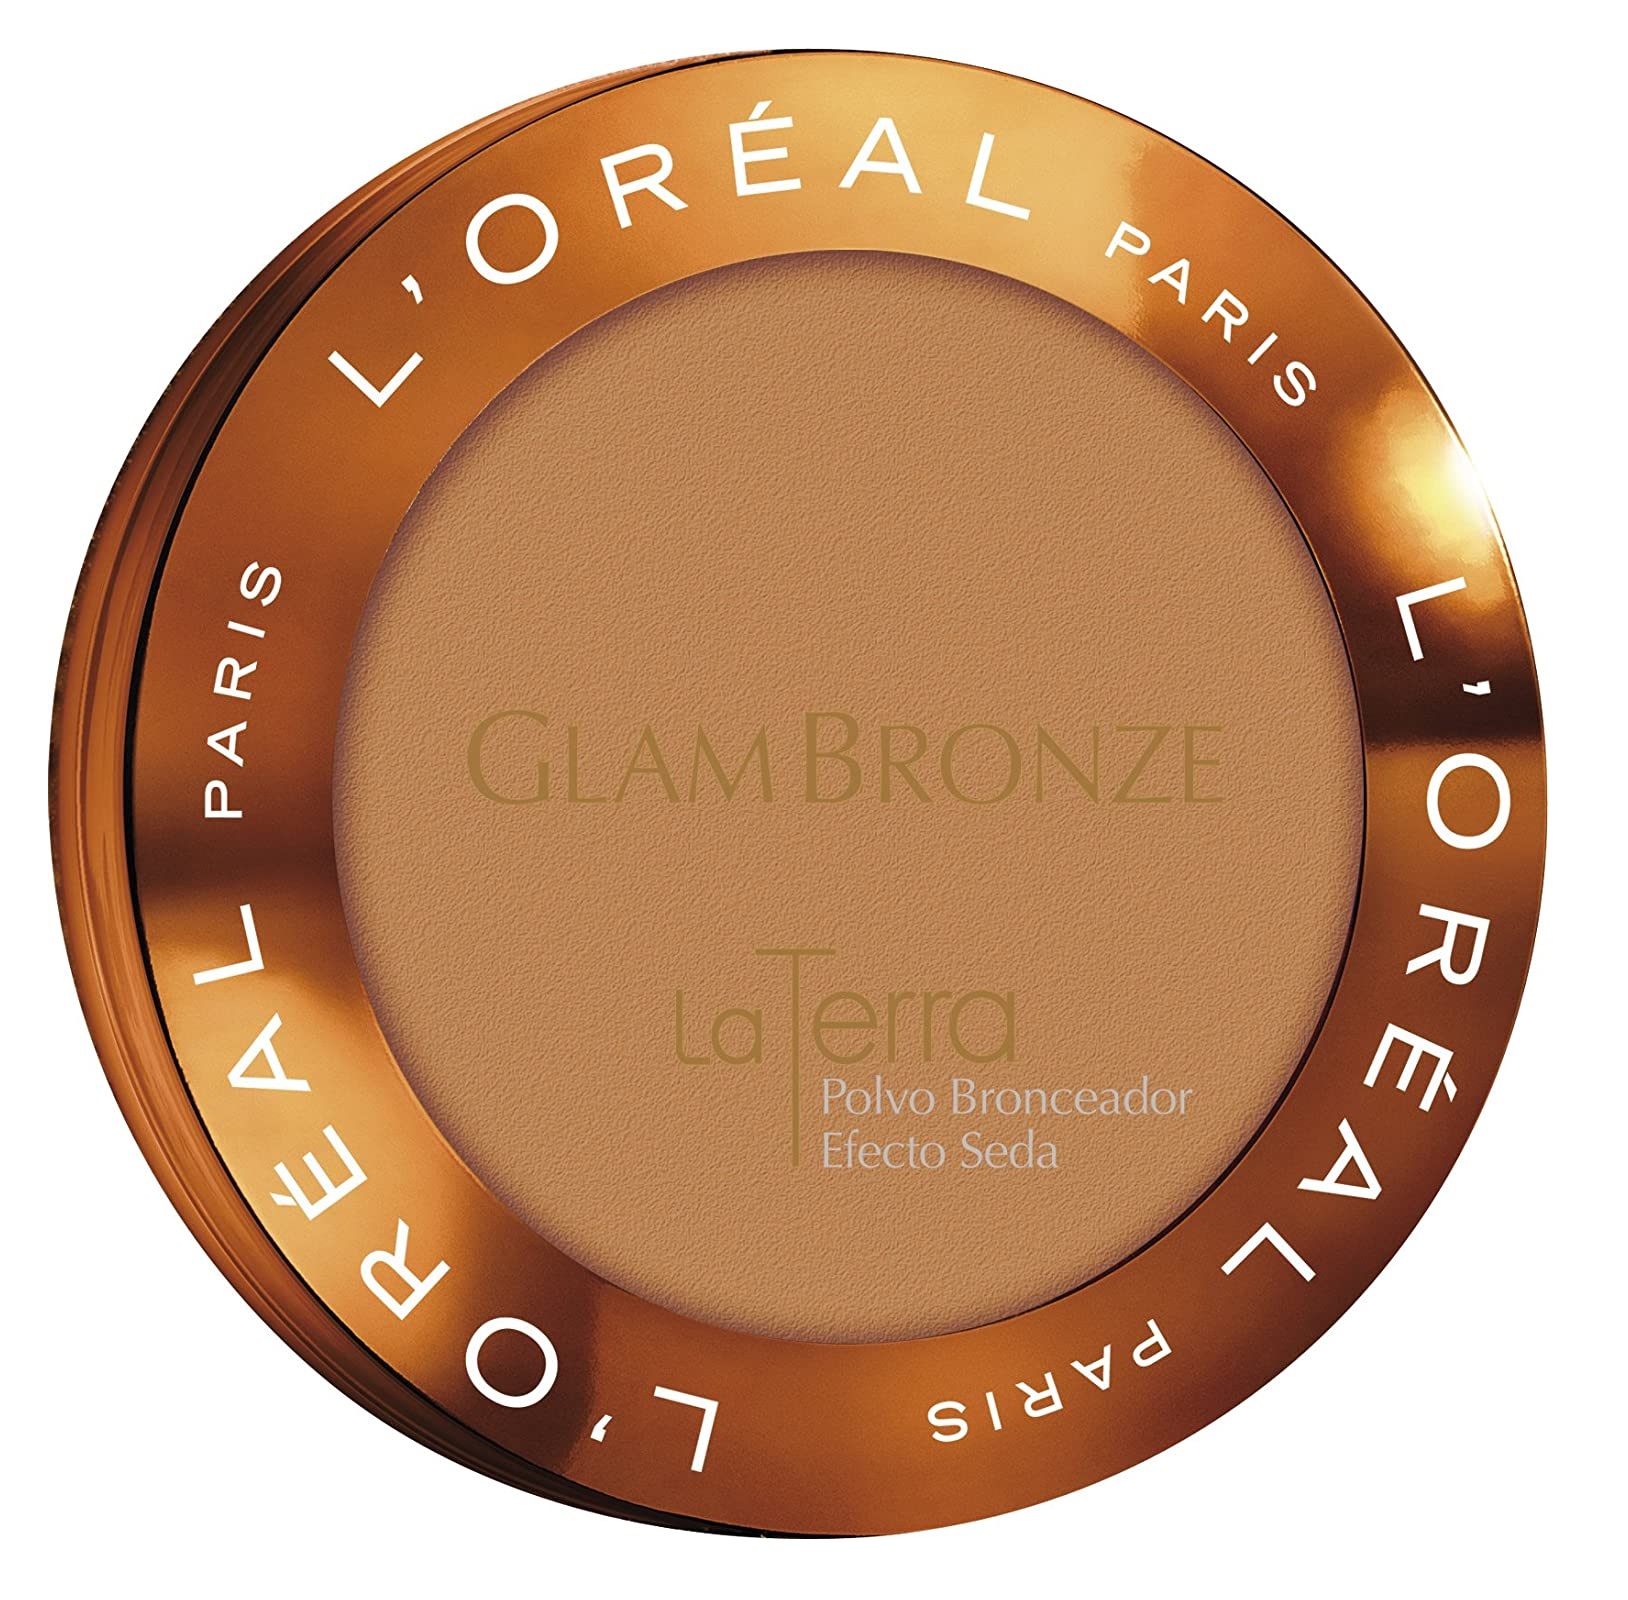 L'Oréal Paris Glam Bronze Terra Poudre Bronzante